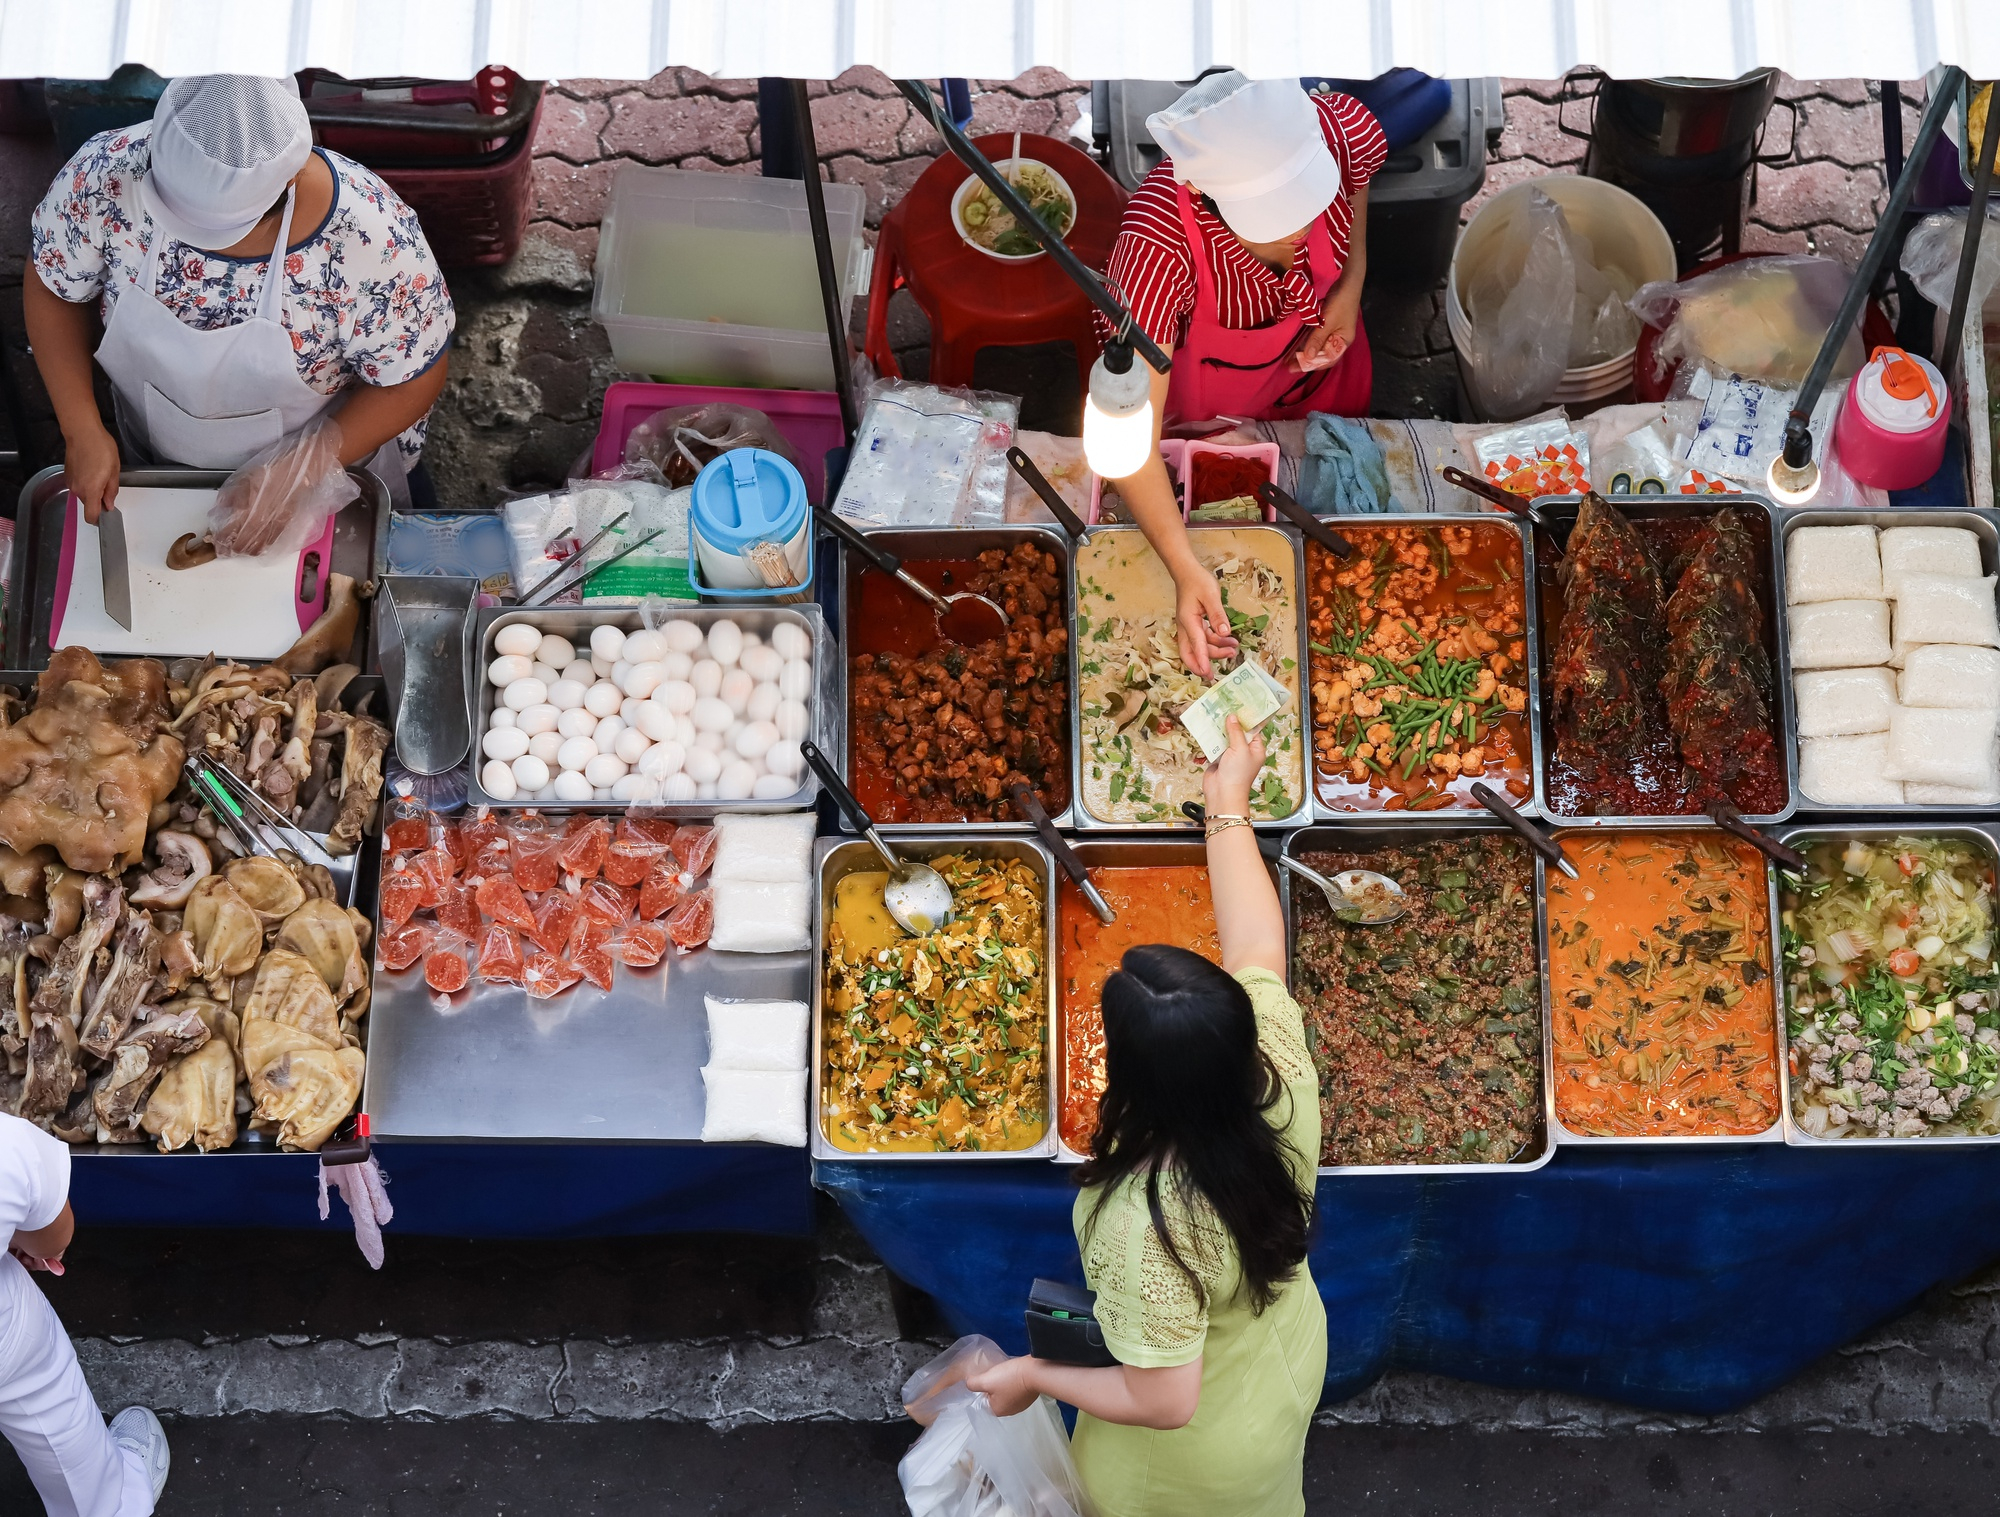 ความแตกต่างทางประชากรและภูมิประเทศต่อความไม่มั่นคงทางอาหารของคนไทย ในช่วงการแพร่ระบาดโควิด-19  